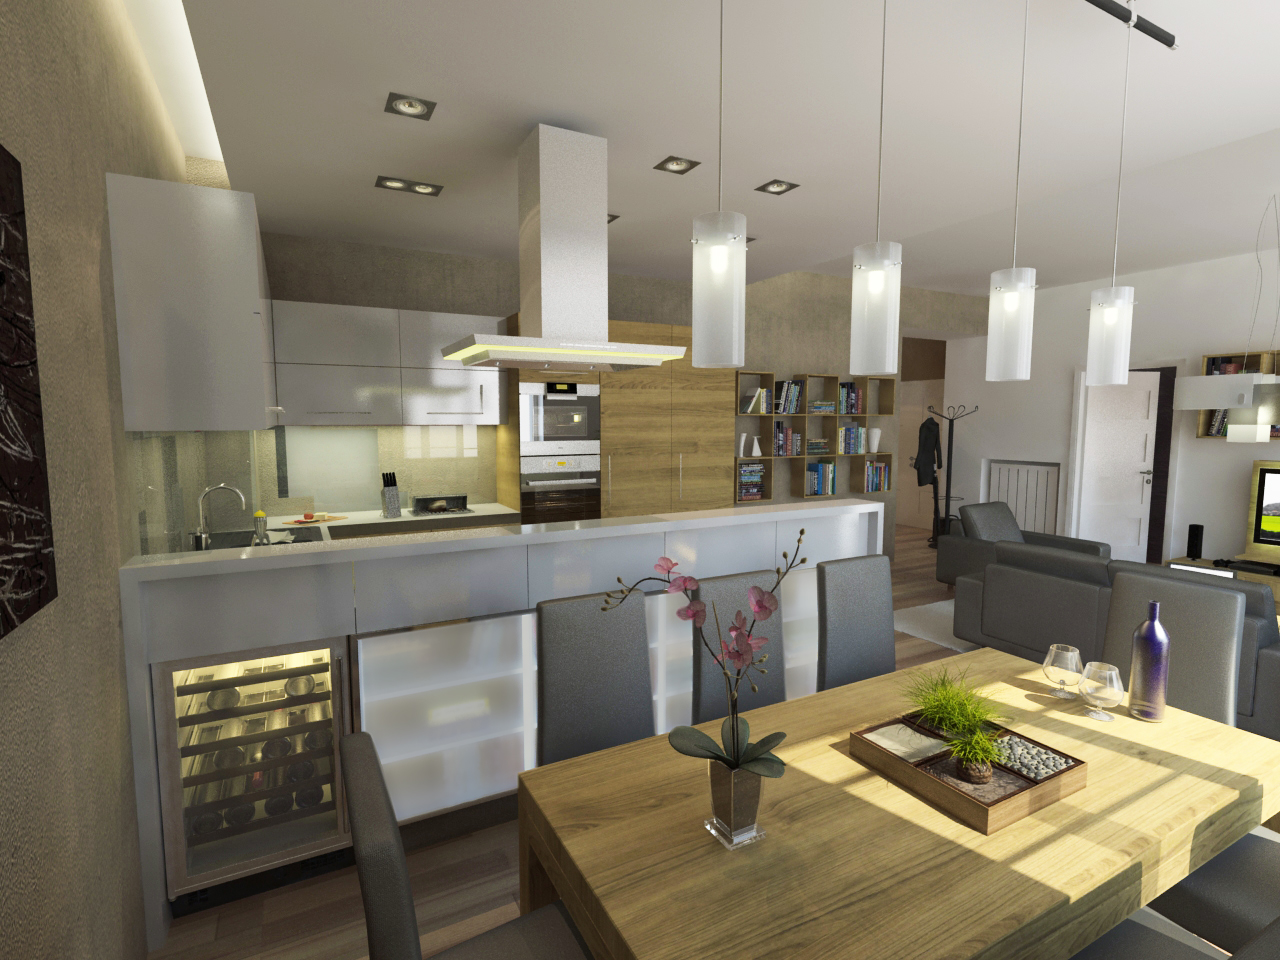 Konyha - étkező Látványterv / Kitchen - dining room architectural visualization